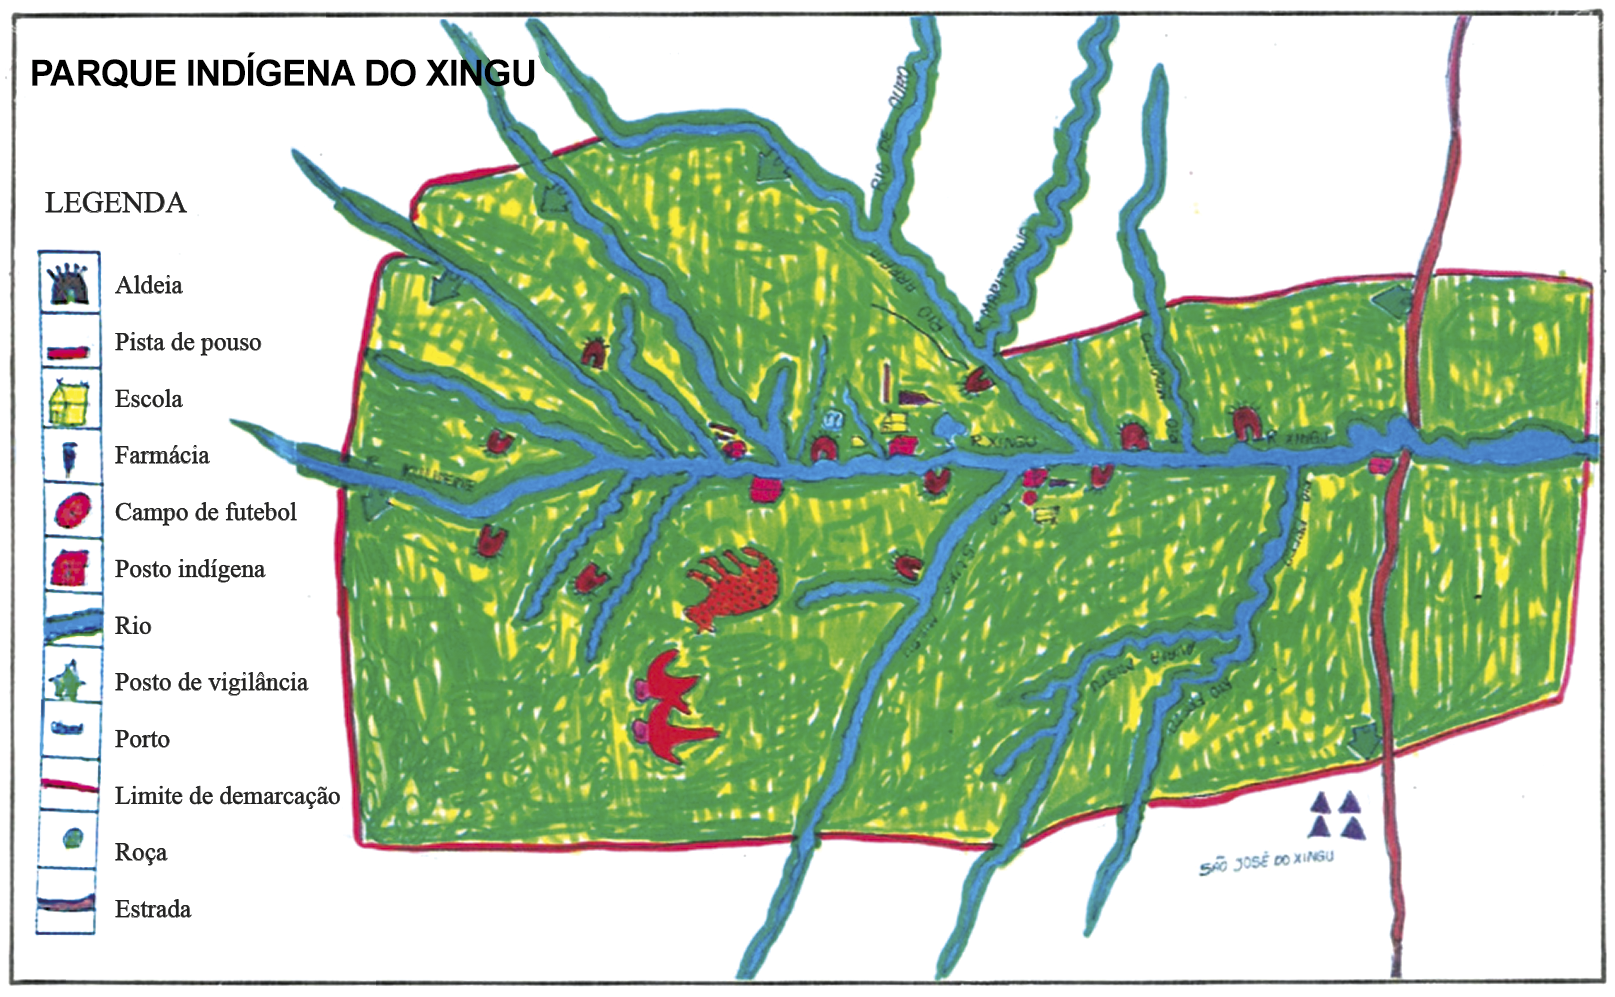 Desenho do Parque Indígena do Xingu. Área delimitada retratando vegetação e rios, com indicações de ícones. Estão representados diversos elementos como várias aldeias (em formato de oca), pista de pouso (retângulo vermelho), escola (casa amarela), farmácia (símbolo vertical azul), campo de futebol (bola), posto indígena (casa vermelha), rio (linha azul), posto de vigilância (casa verde), porto (símbolo horizontal azul), limite de demarcação (linha vermelha), roça (círculo verde) e estrada (linha marrom). À esquerda, uma legenda representando os símbolos utilizados.